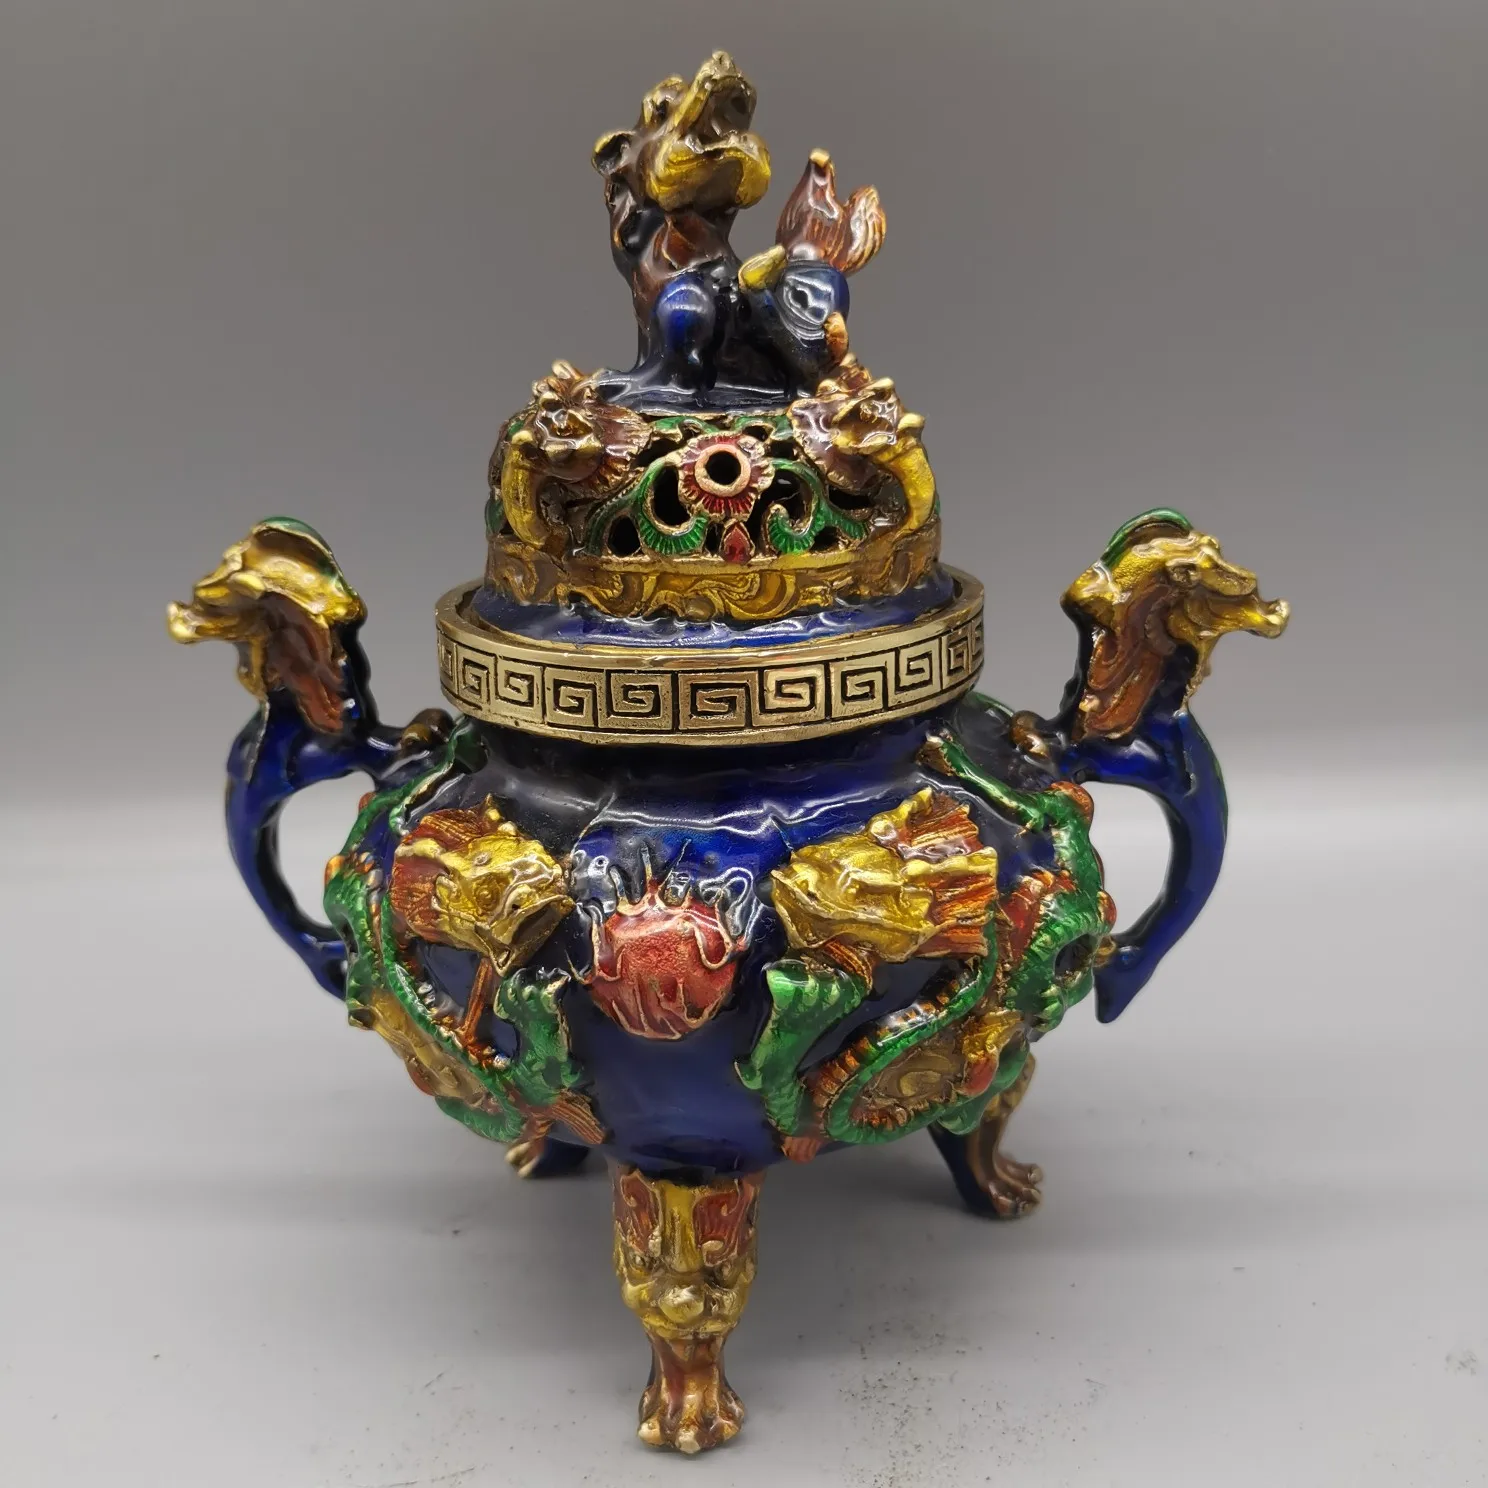 

Китайская антикварная коллекция поделок искусственная двойная дракона ухо курильница поделка статуя украшение для дома подарок